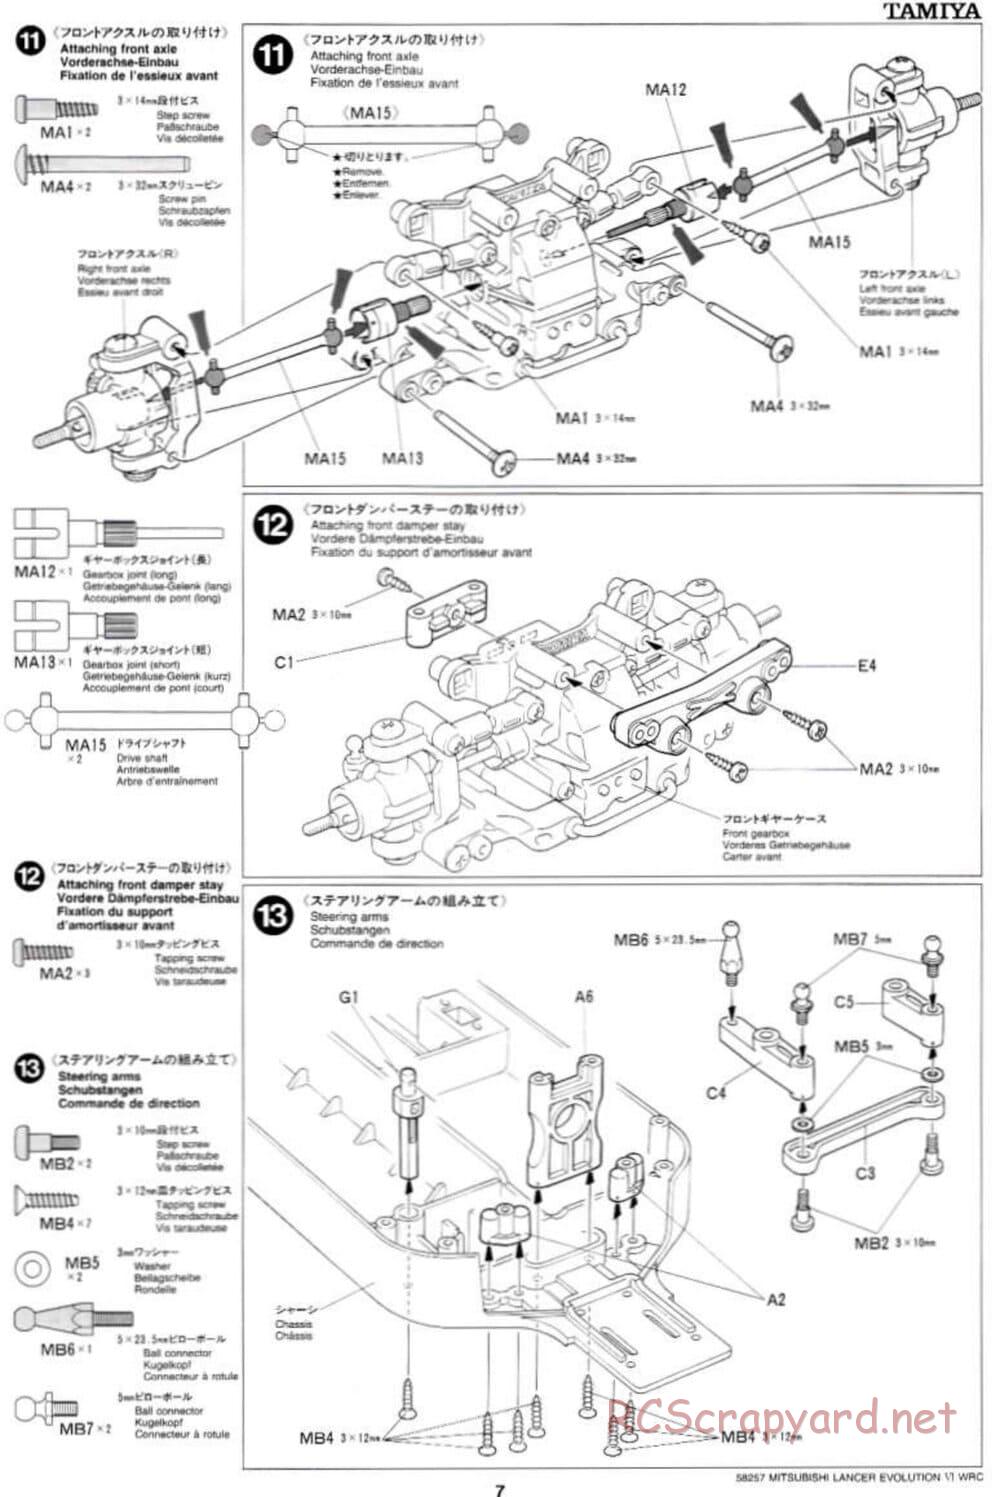 Tamiya - Mitsubishi Lancer Evolution VI WRC - TB-01 Chassis - Manual - Page 7